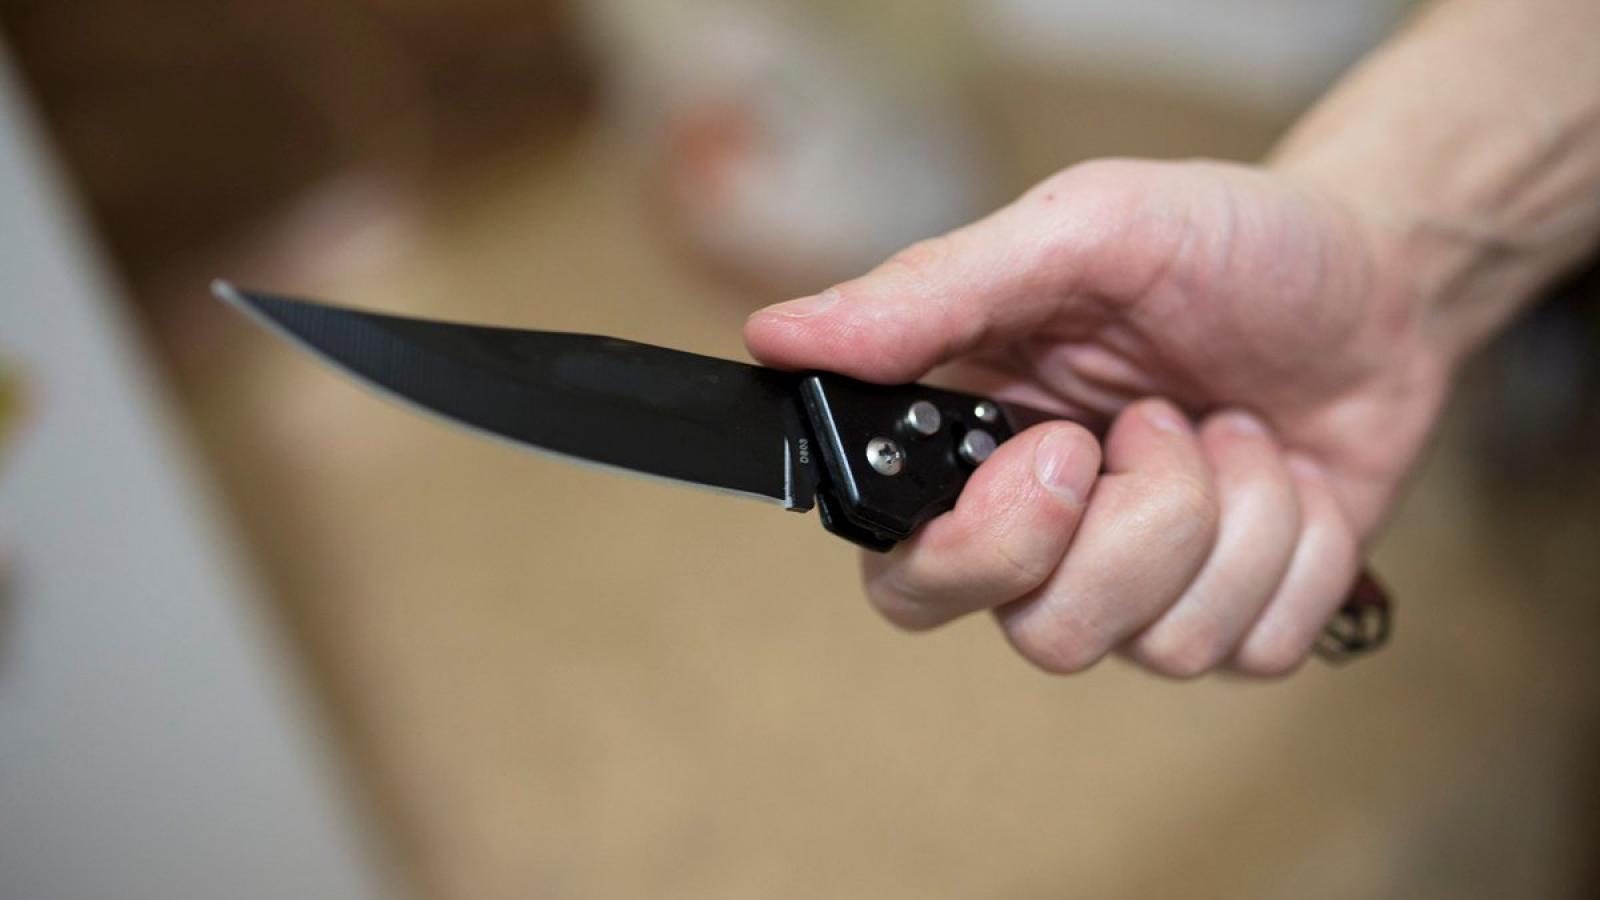 Вологжанин напал на женщину и ее 2-летнюю дочь с ножом